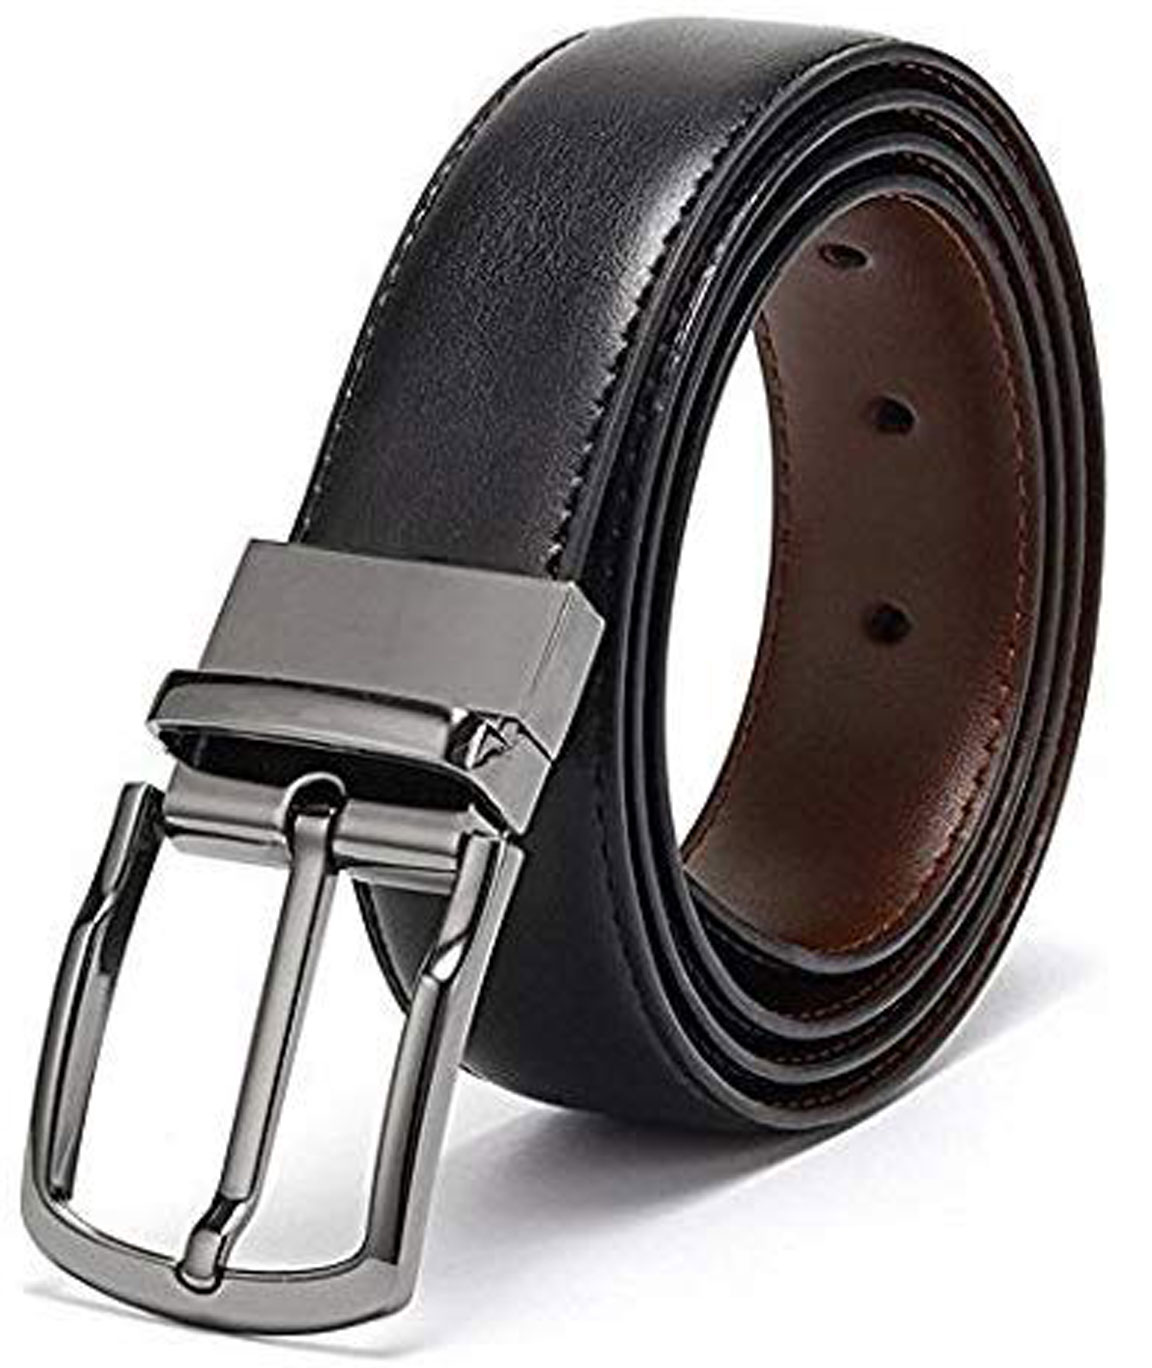 Urban alfami belt for men, formal belt, gift for gents, Gents belt, mens belt